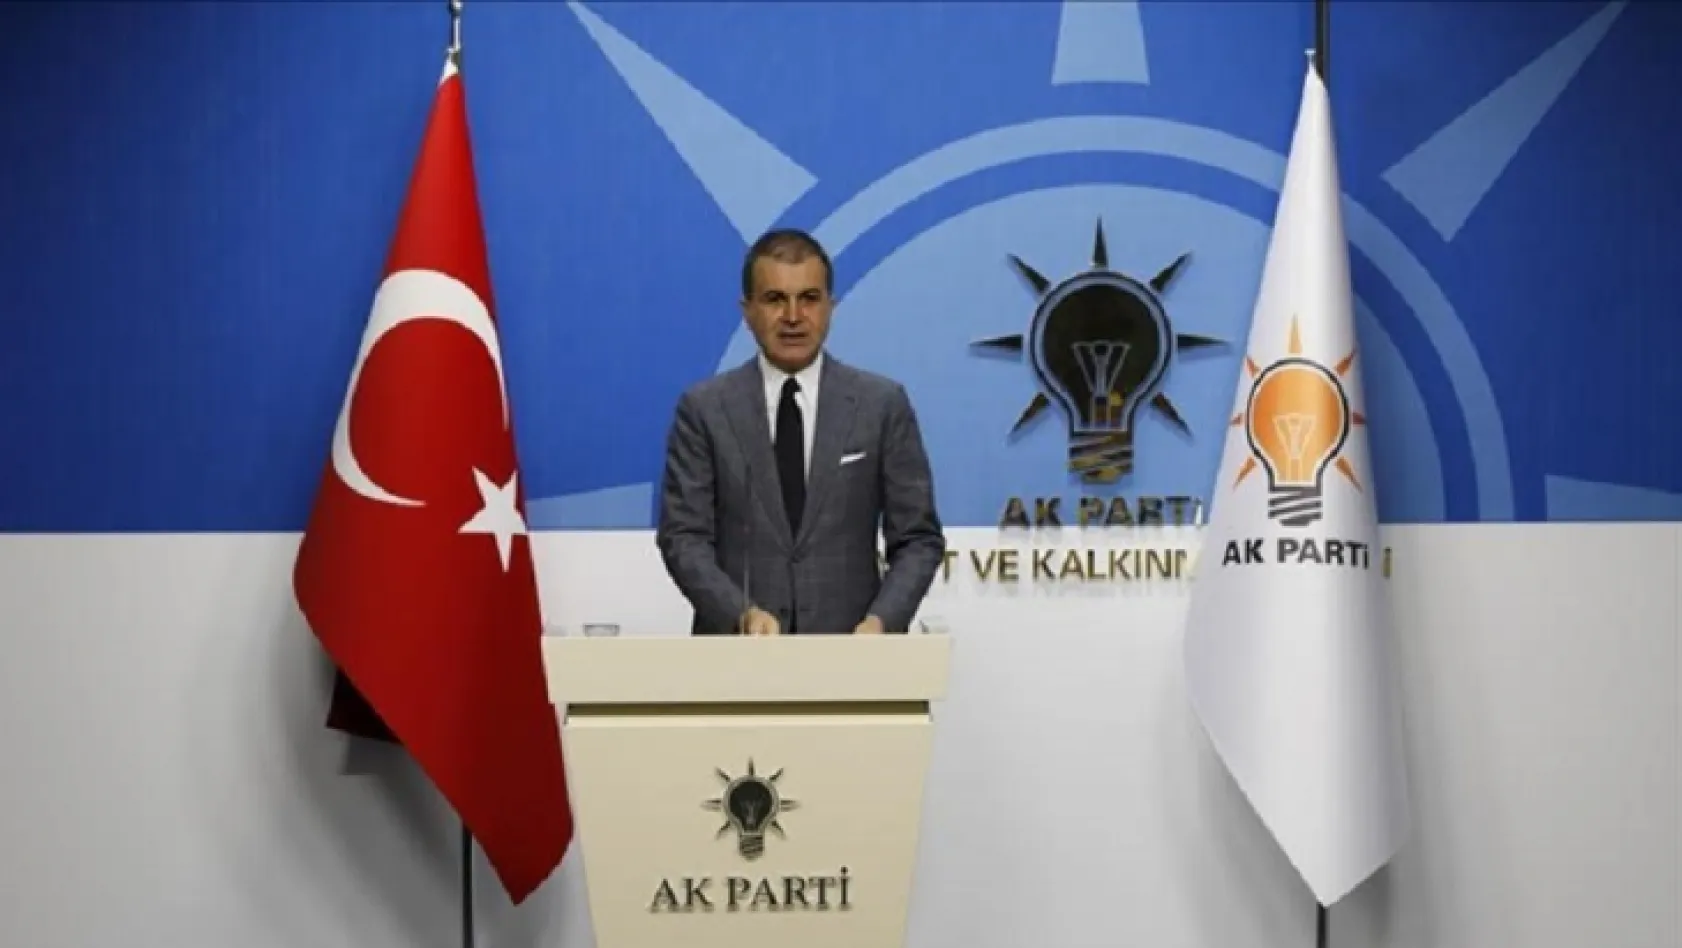 AK Parti Sözcüsü Çelik'ten 'Af' açıklaması!